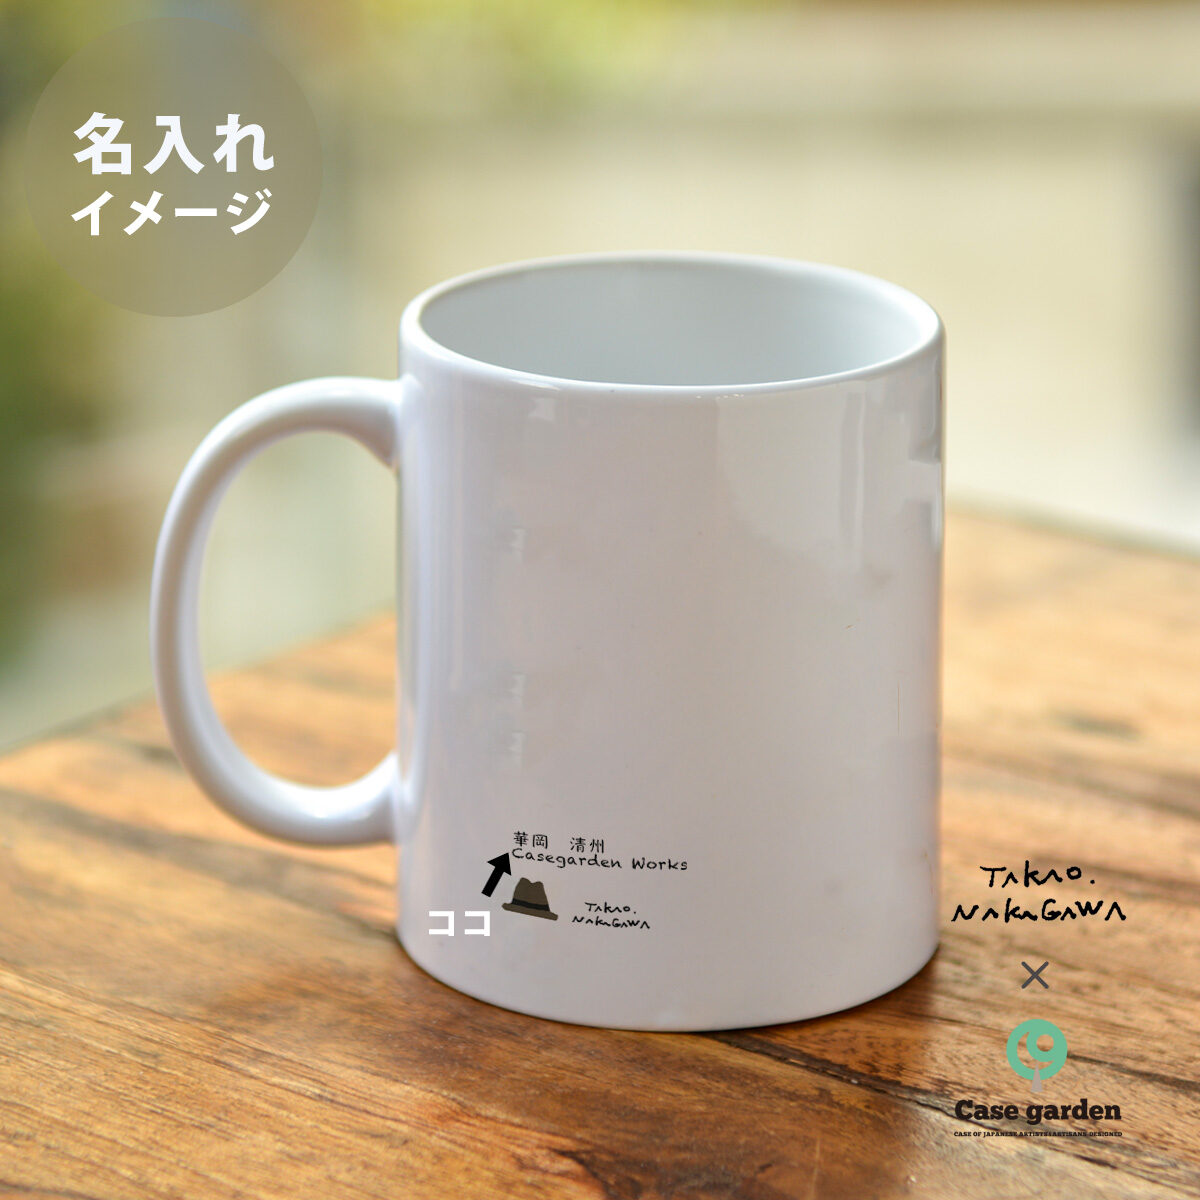 マグカップ おしゃれ かわいい 陶器 ブランド クマ 珈琲 コーヒー 名入れ